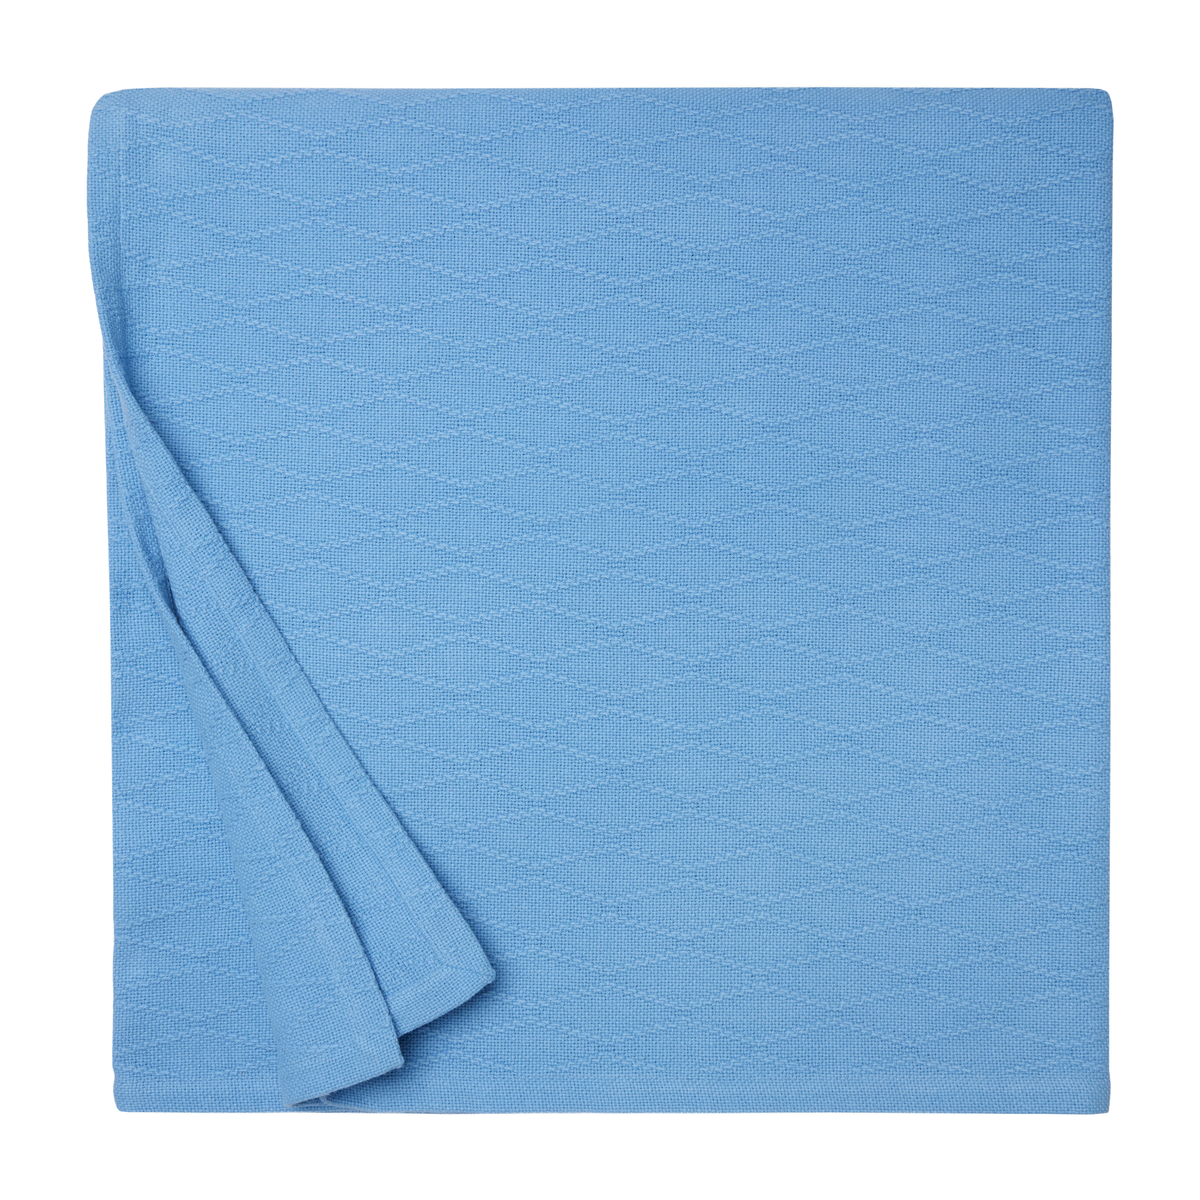 Folded Blanket of Sferra Cetara Bedding Cobalt Color